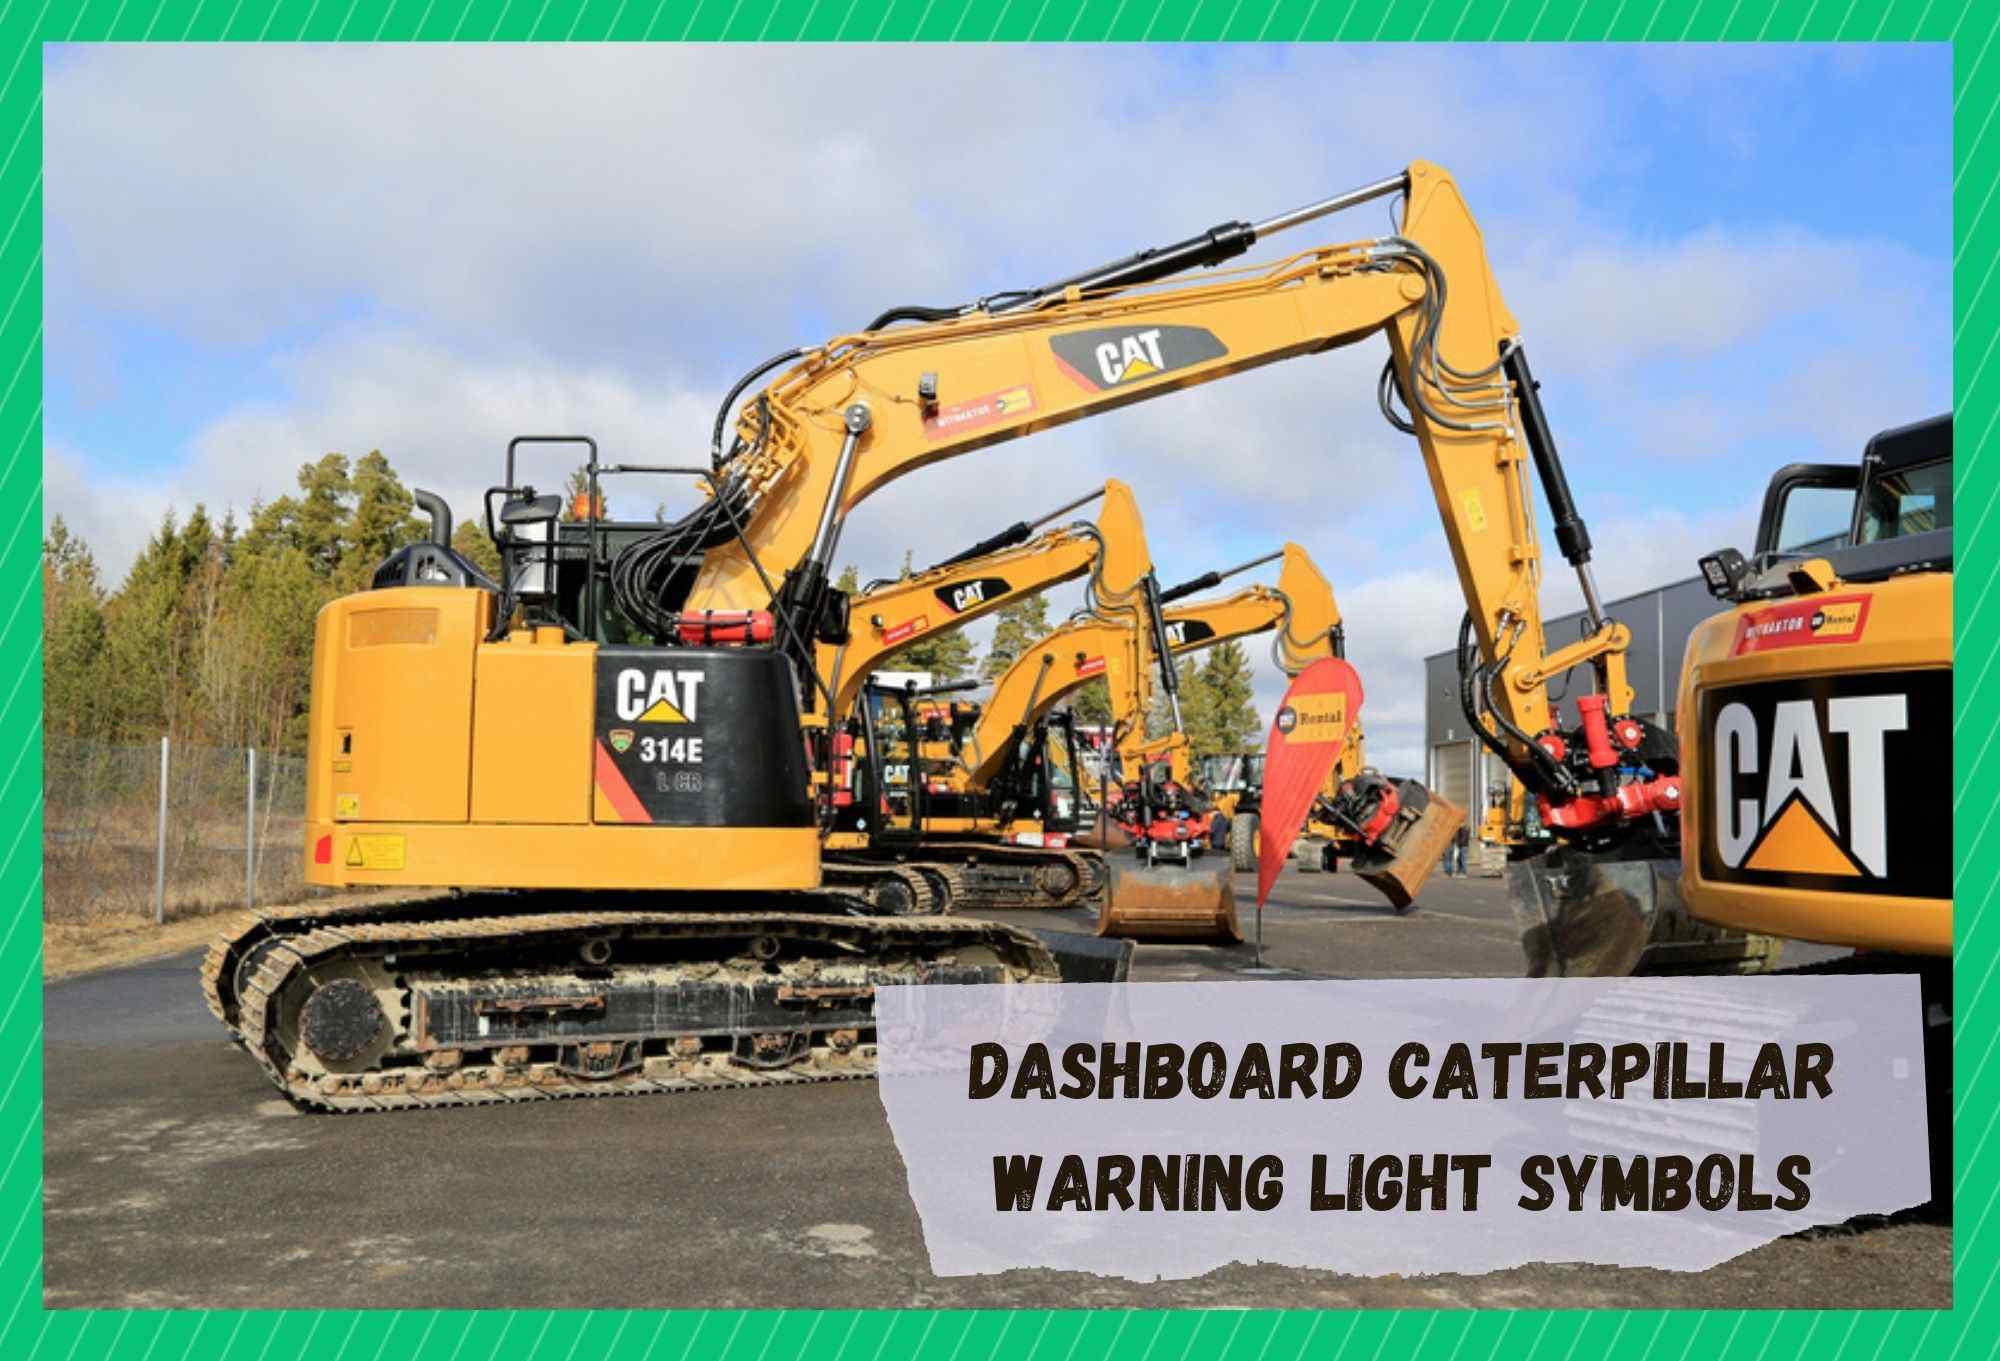 dashboard caterpillar warning light symbols